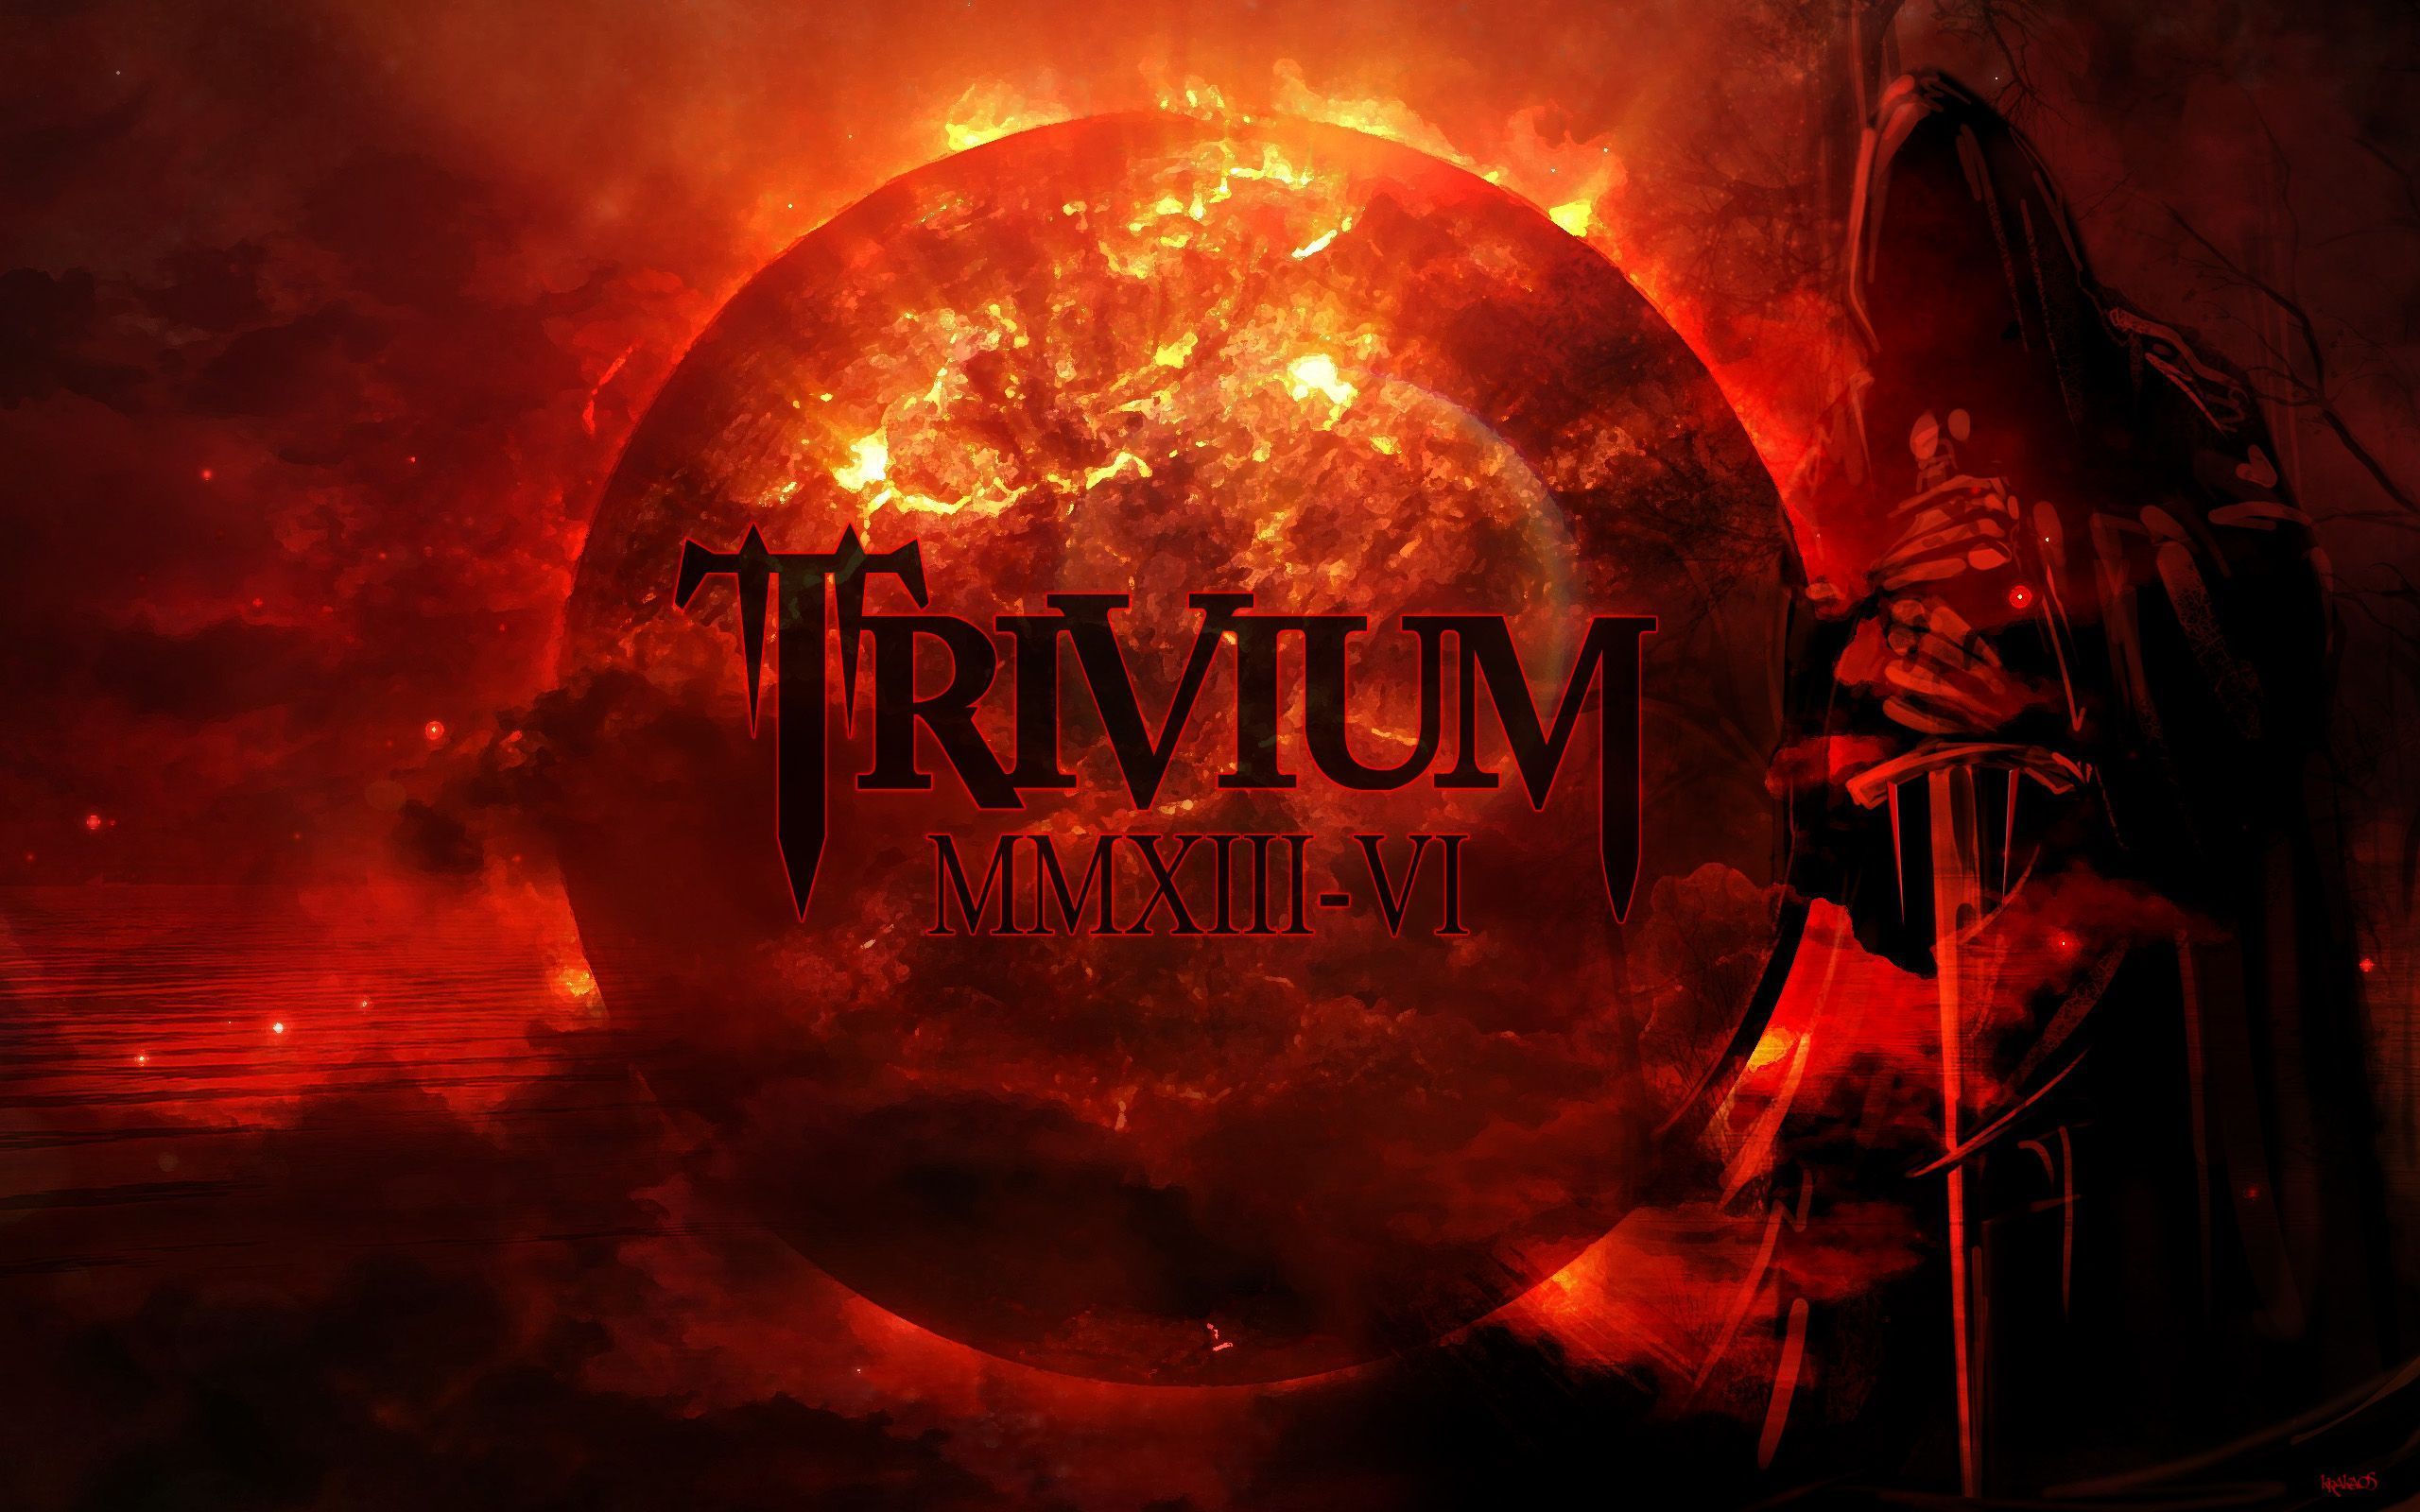 Trivium-album6-krakaos2013.jpg